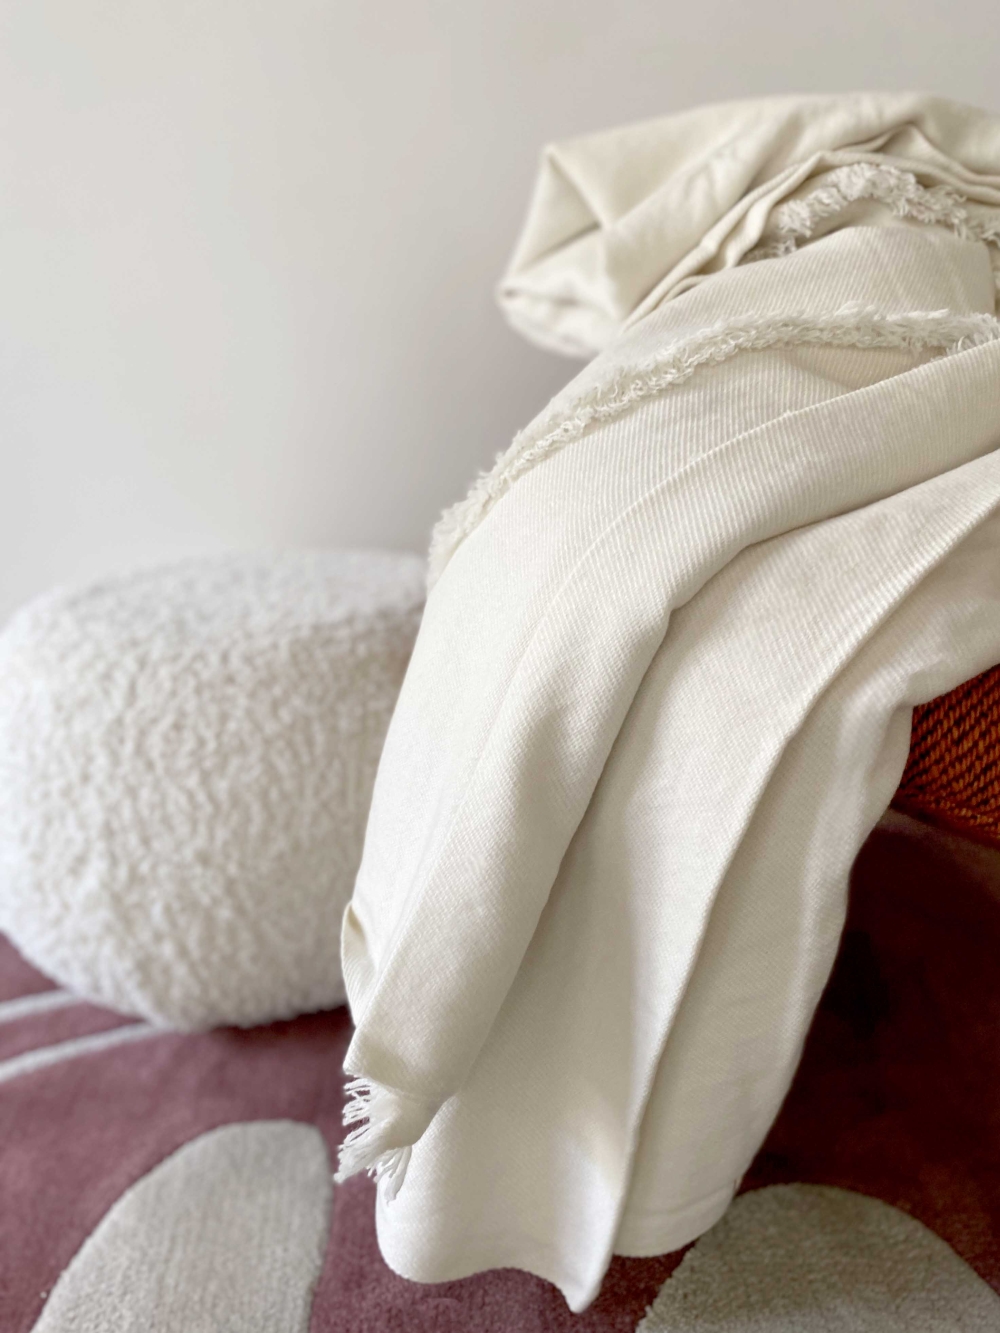 Cashmere accessories blanket akita natural 210 x 240 natural ecru 210 x 240